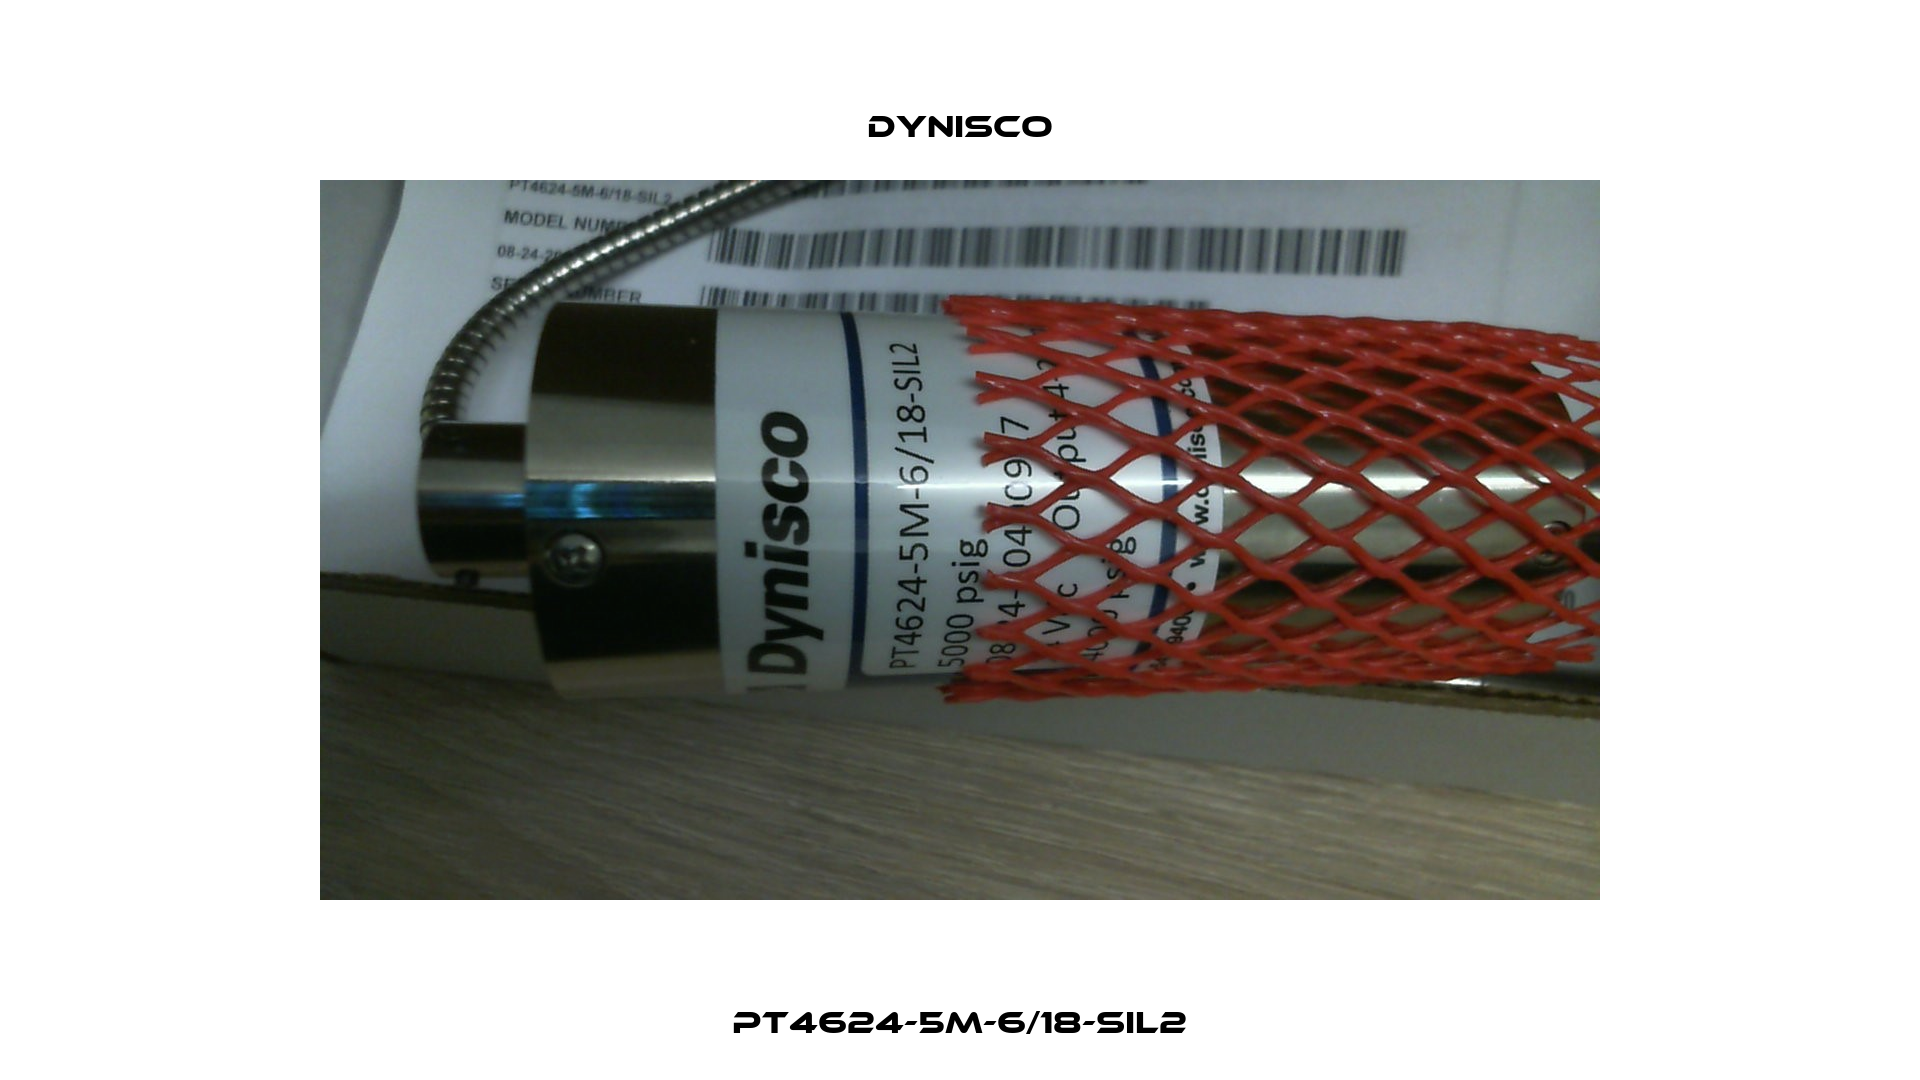 PT4624-5M-6/18-SIL2 Dynisco